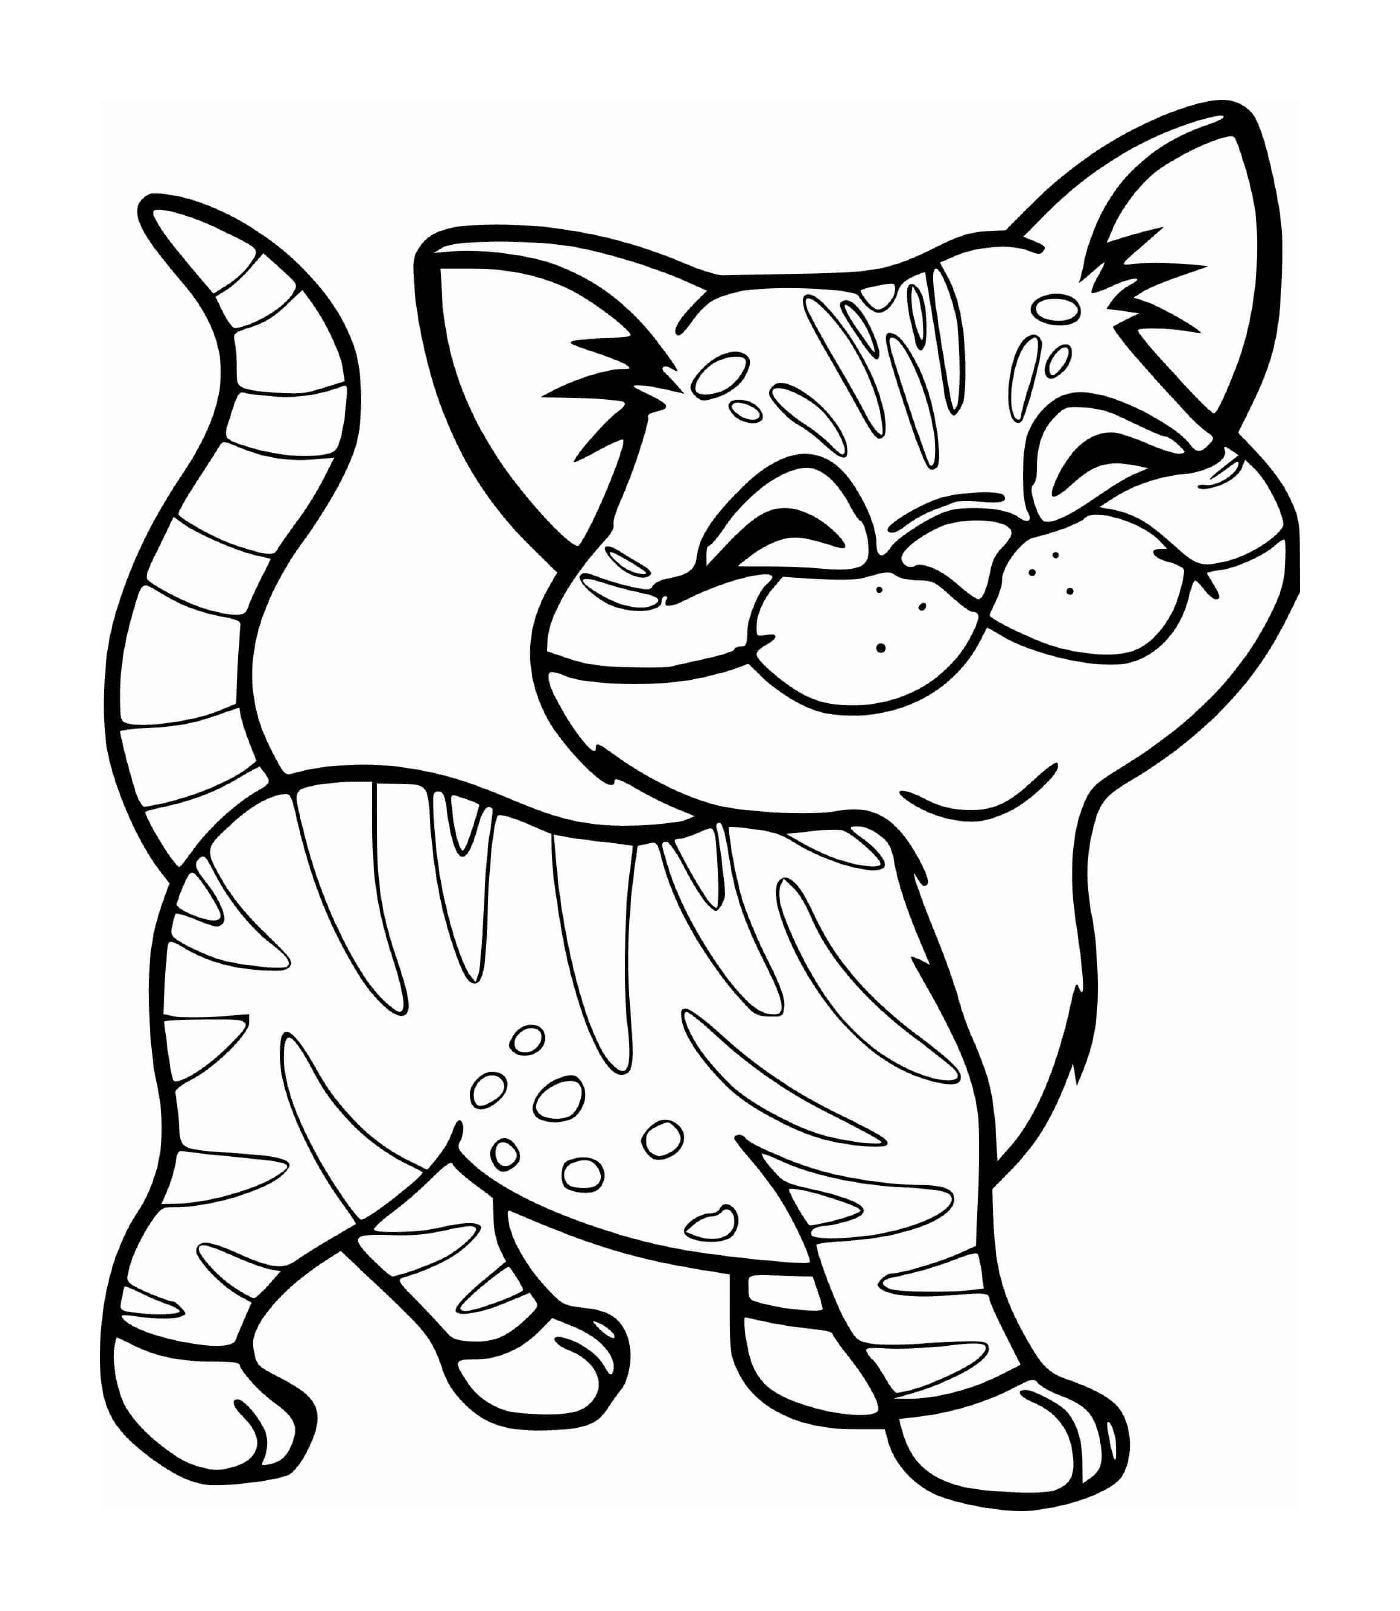  Un gatito lindo con una raya de tigre sonriendo 